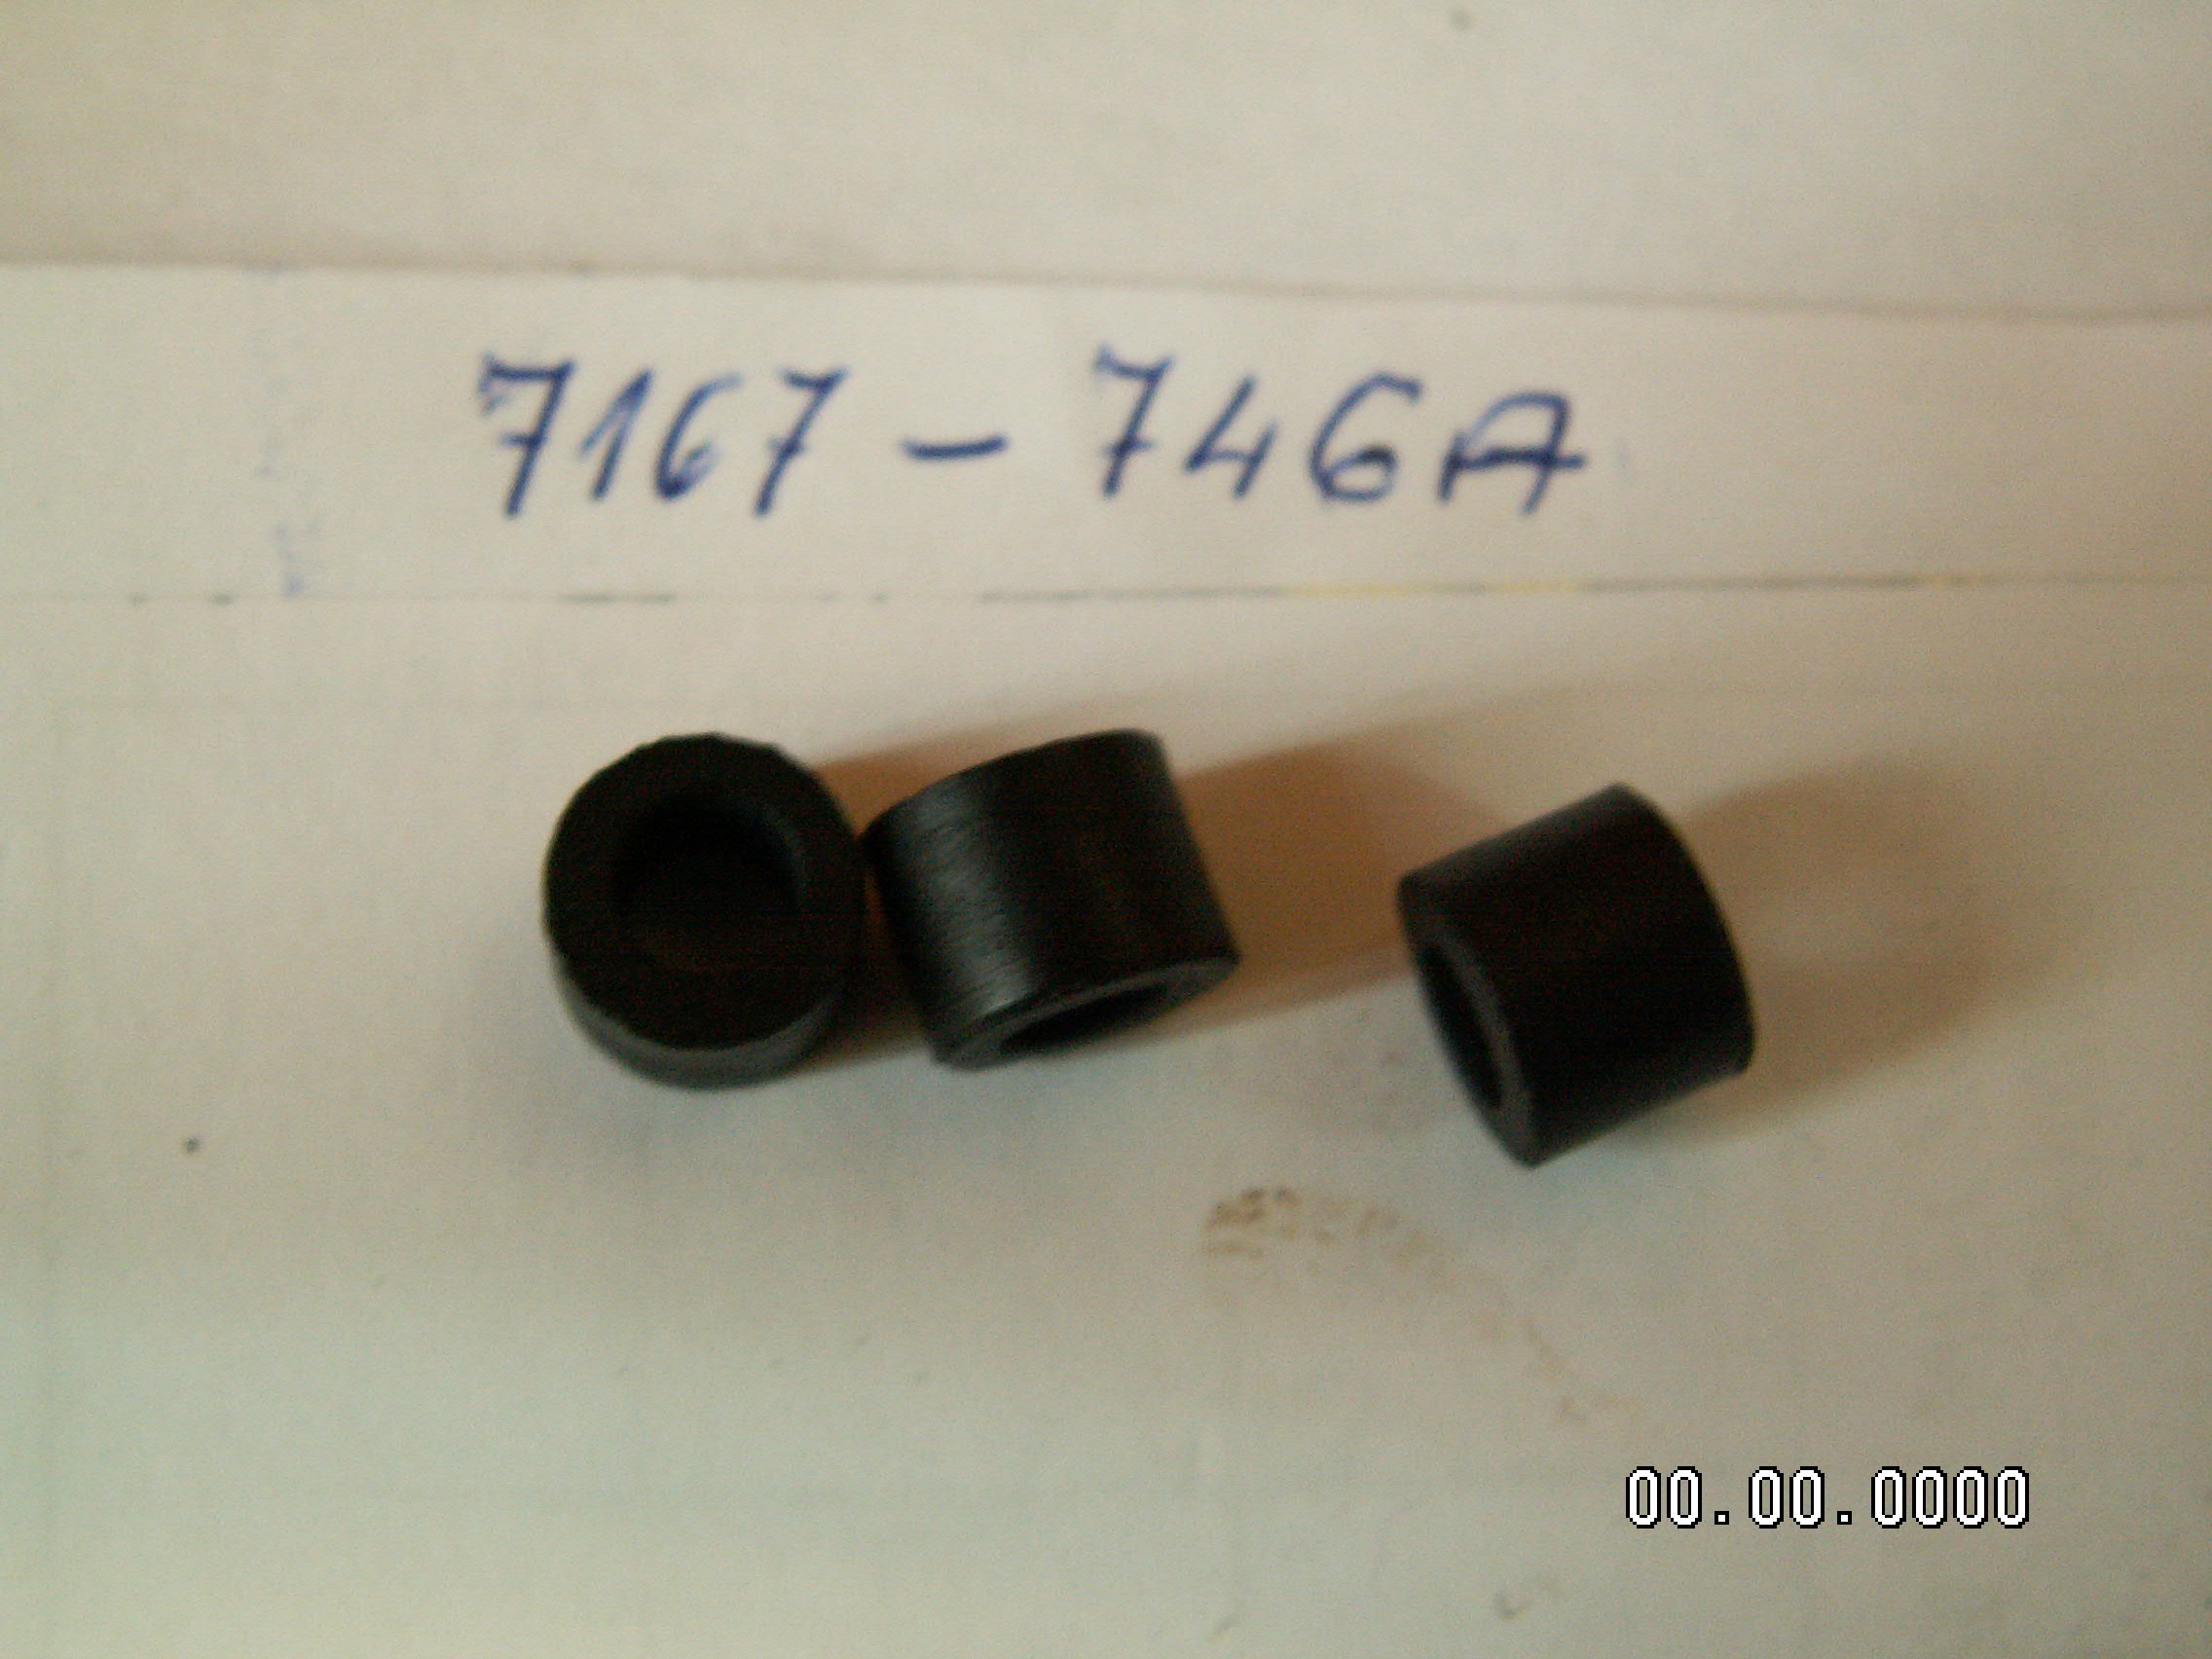 Uszczelka gum. 7167-746A